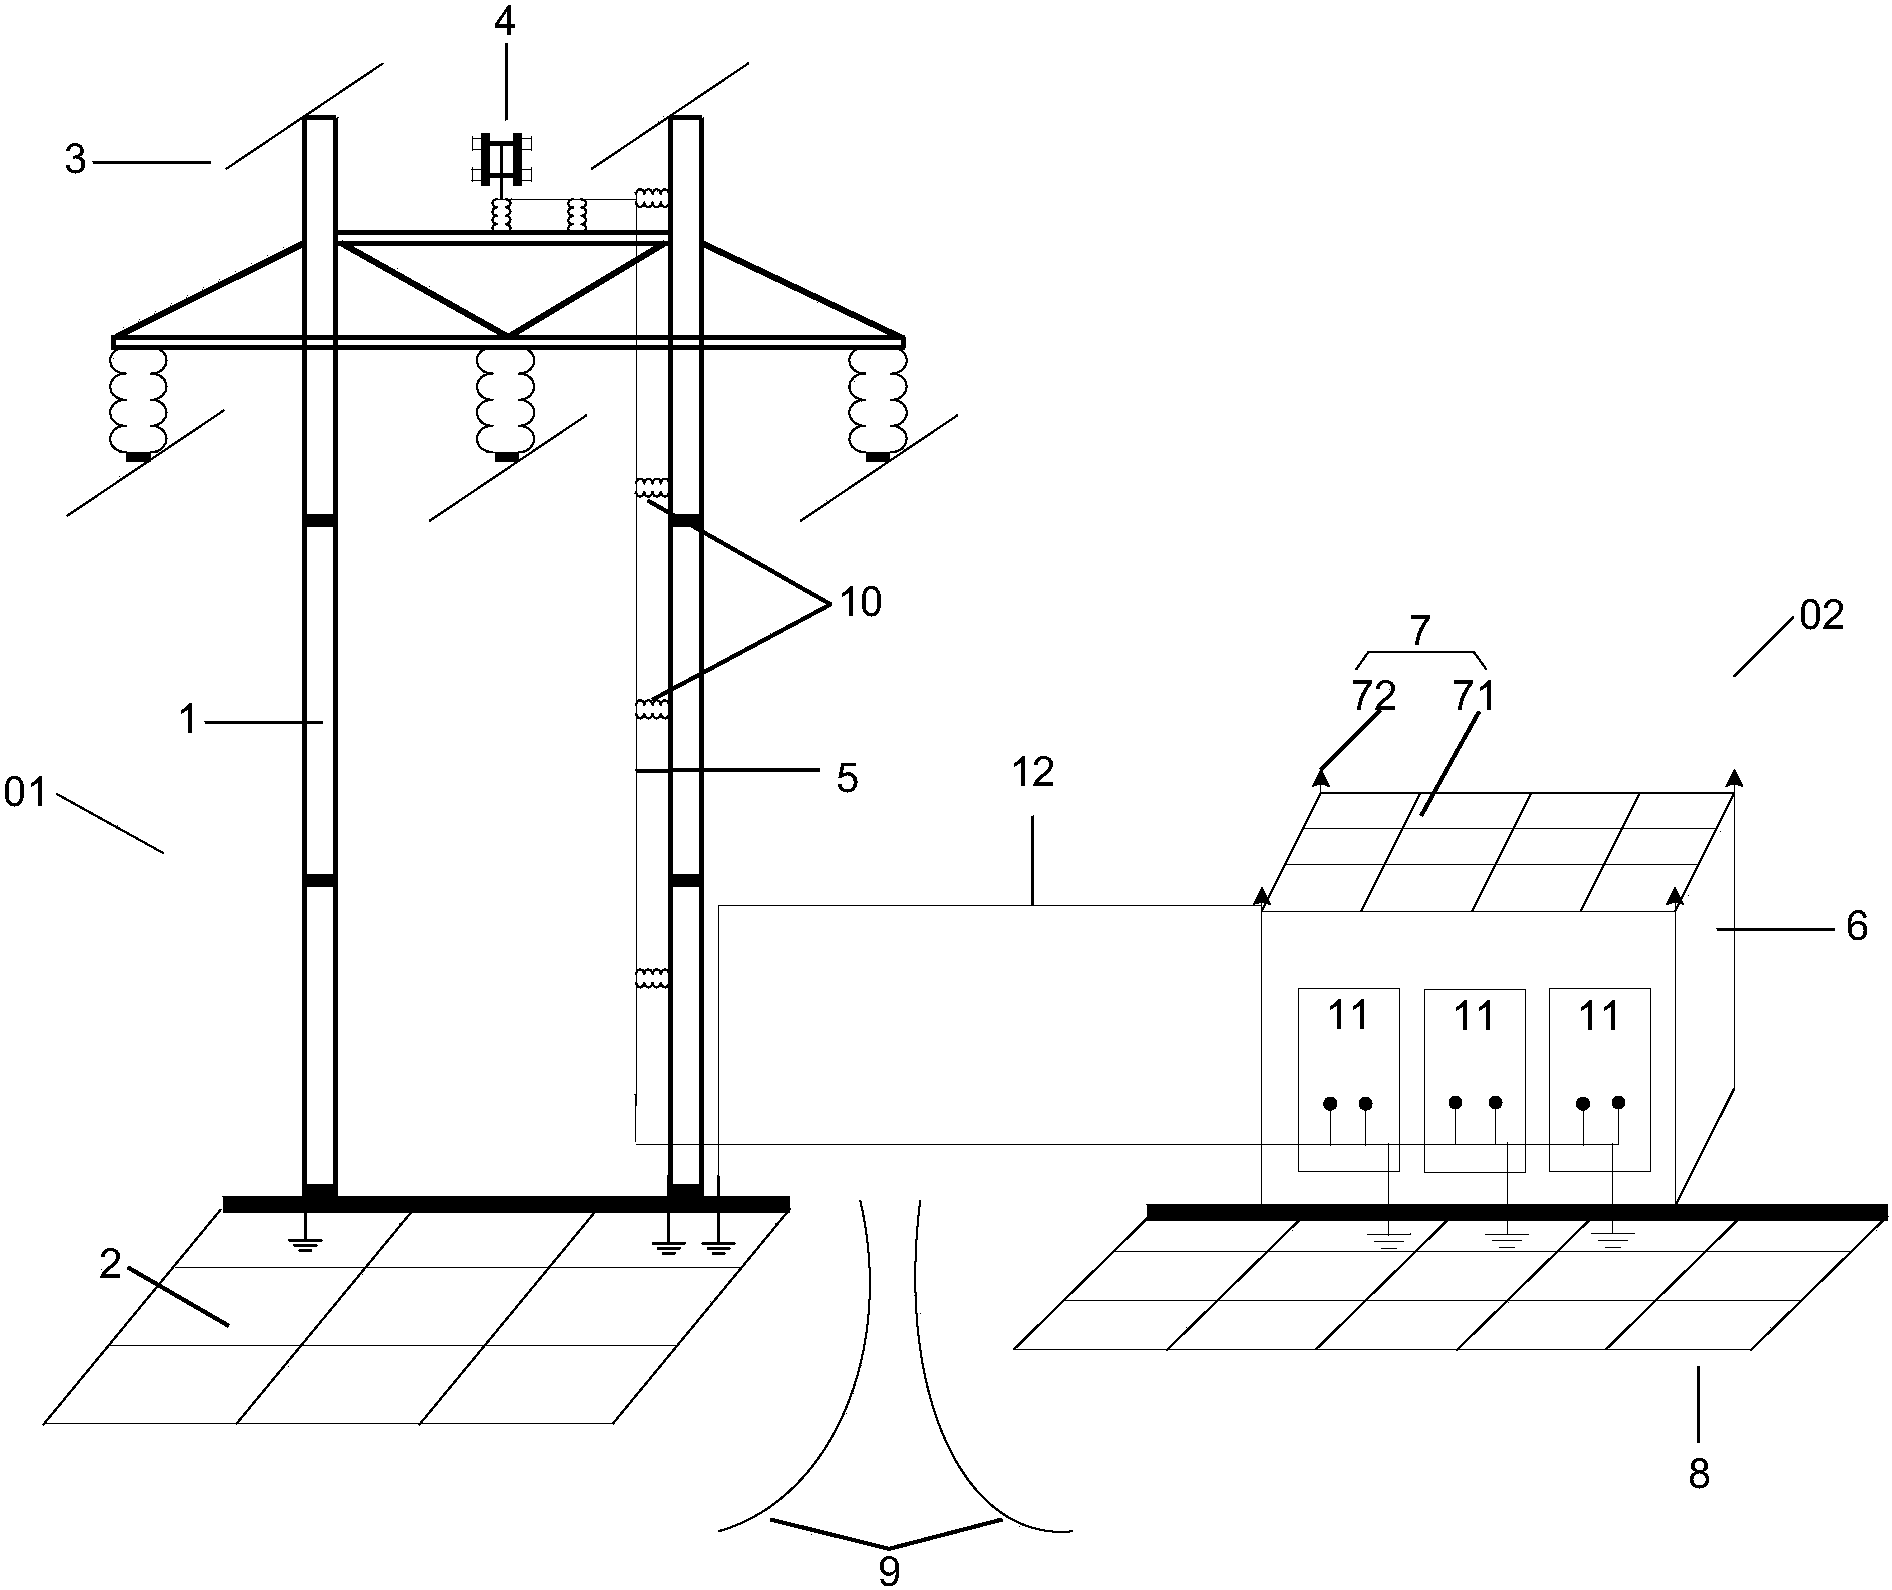 输电塔模型结构图图片